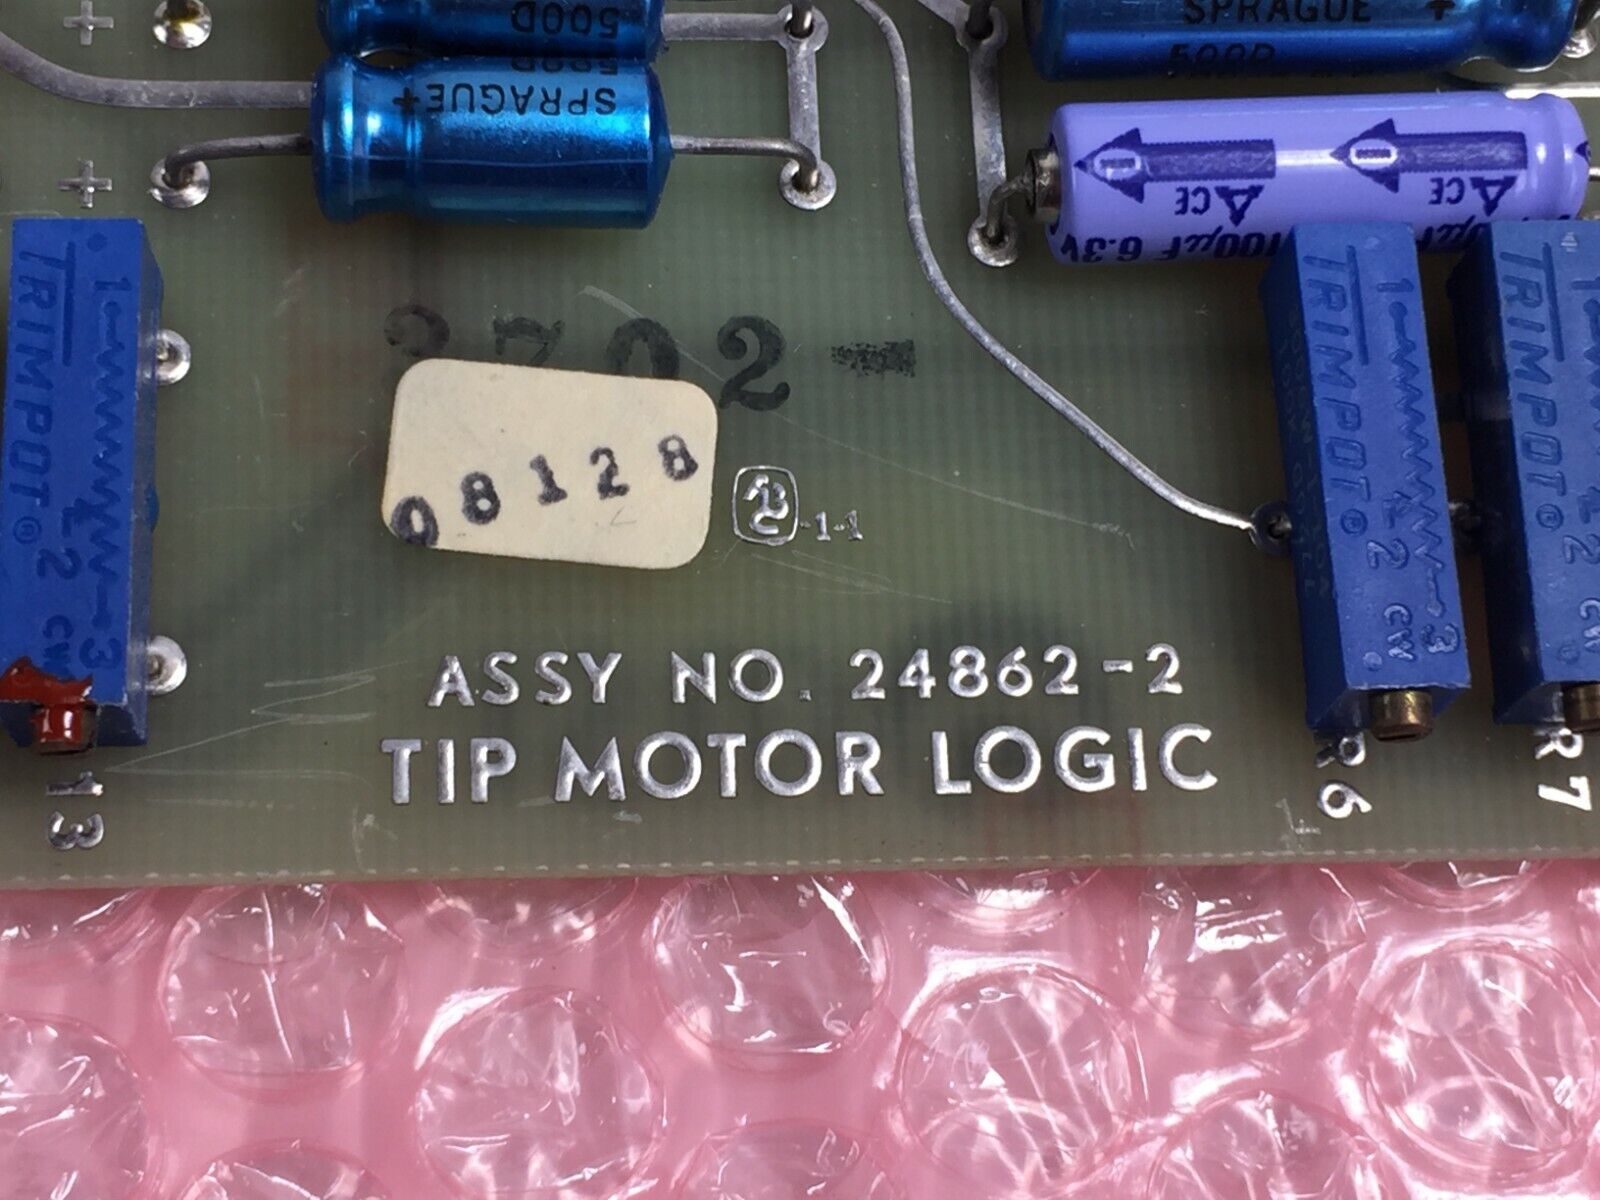 MSI Tip Motor Logic 08128  Assy No 24862-2  Micromedic Card